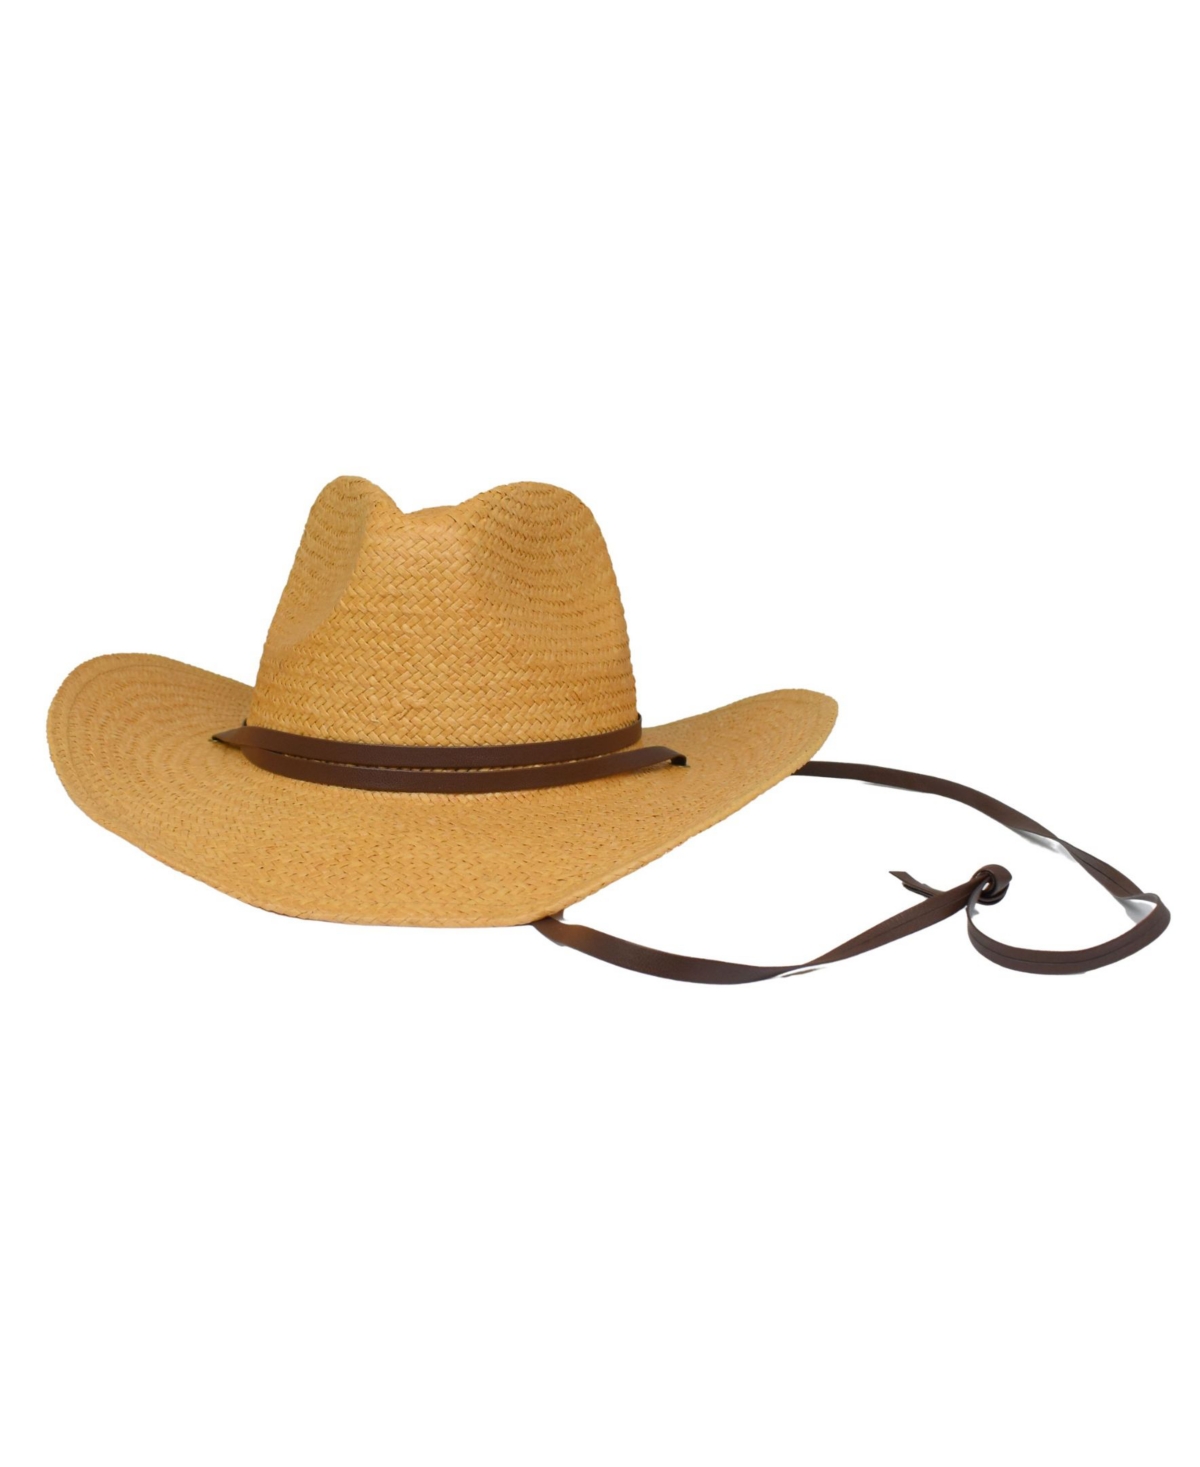 Marcus Adler Women's Straw Cowboy Hat In Brown